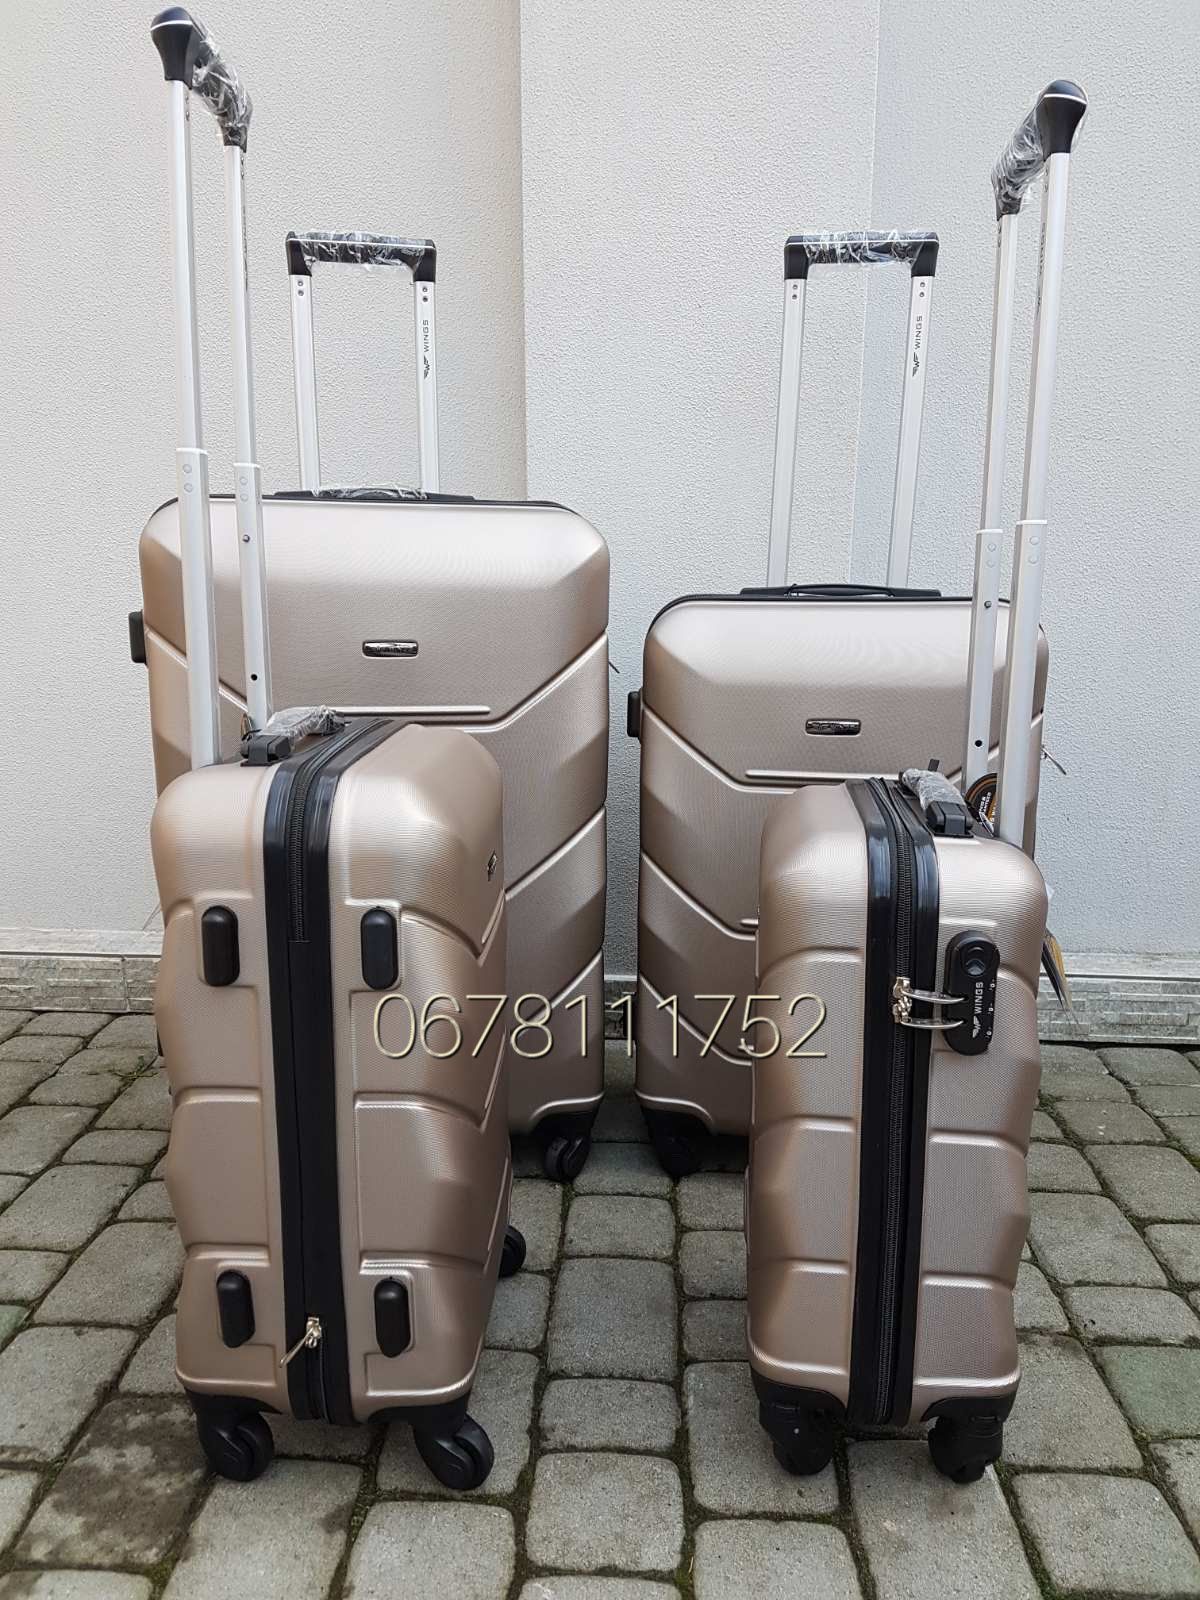 WINGS 147 Польща валізи чемоданы сумки на колесах комплект четвірка